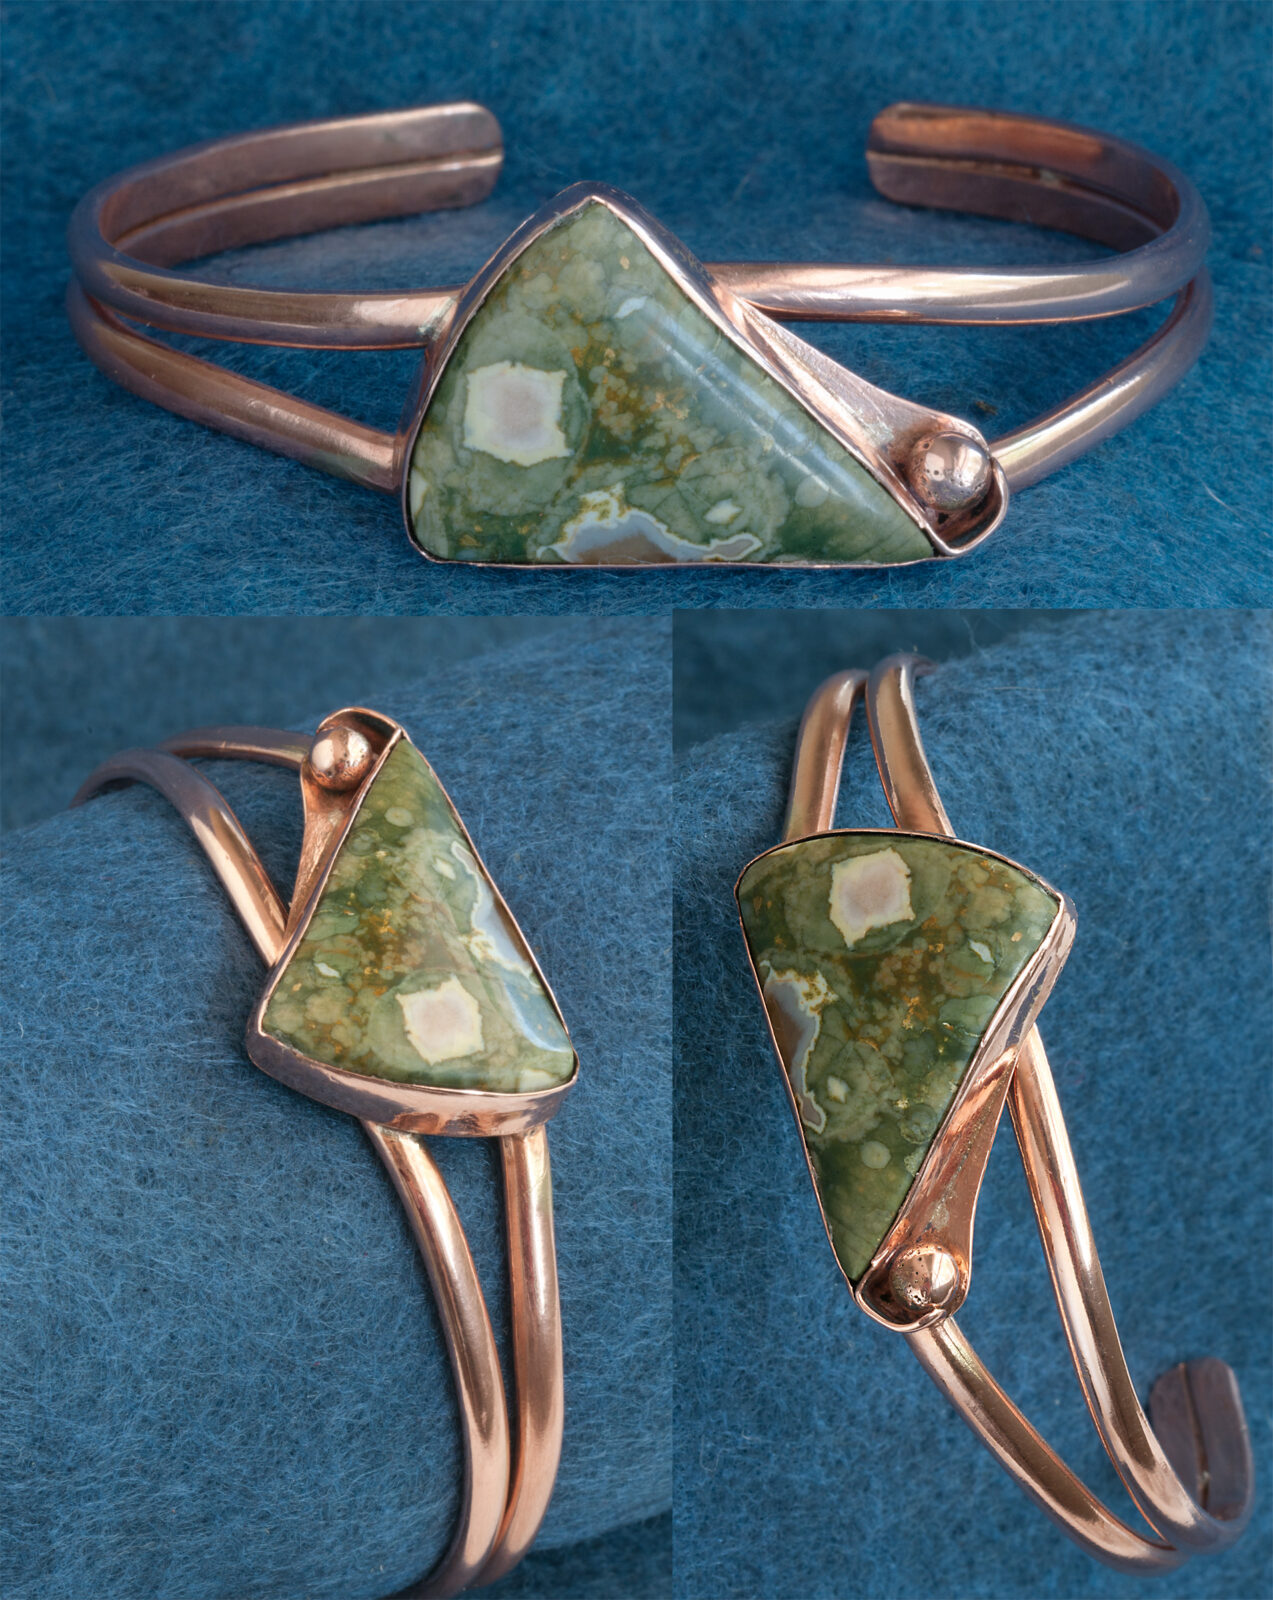 Copper cuff bracelet, green jasper stone